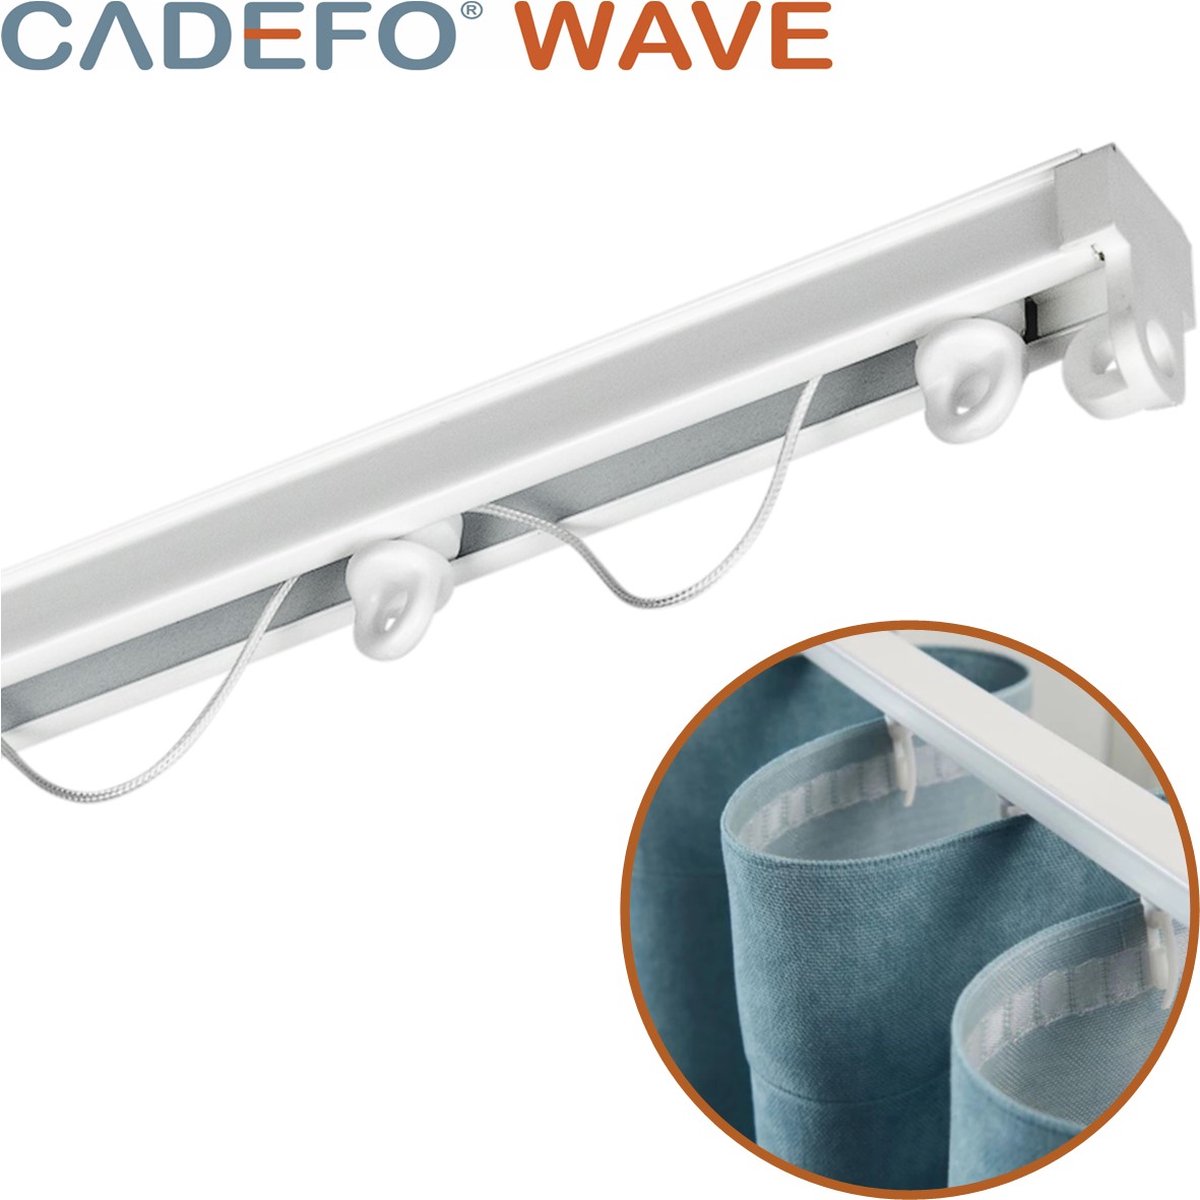 CADEFO WAVE (501 - 550 cm) Gordijnrails - Compleet op maat! - UIT 1 STUK - Leverbaar tot 6 meter - Plafondbevestiging - Lengte 540 cm